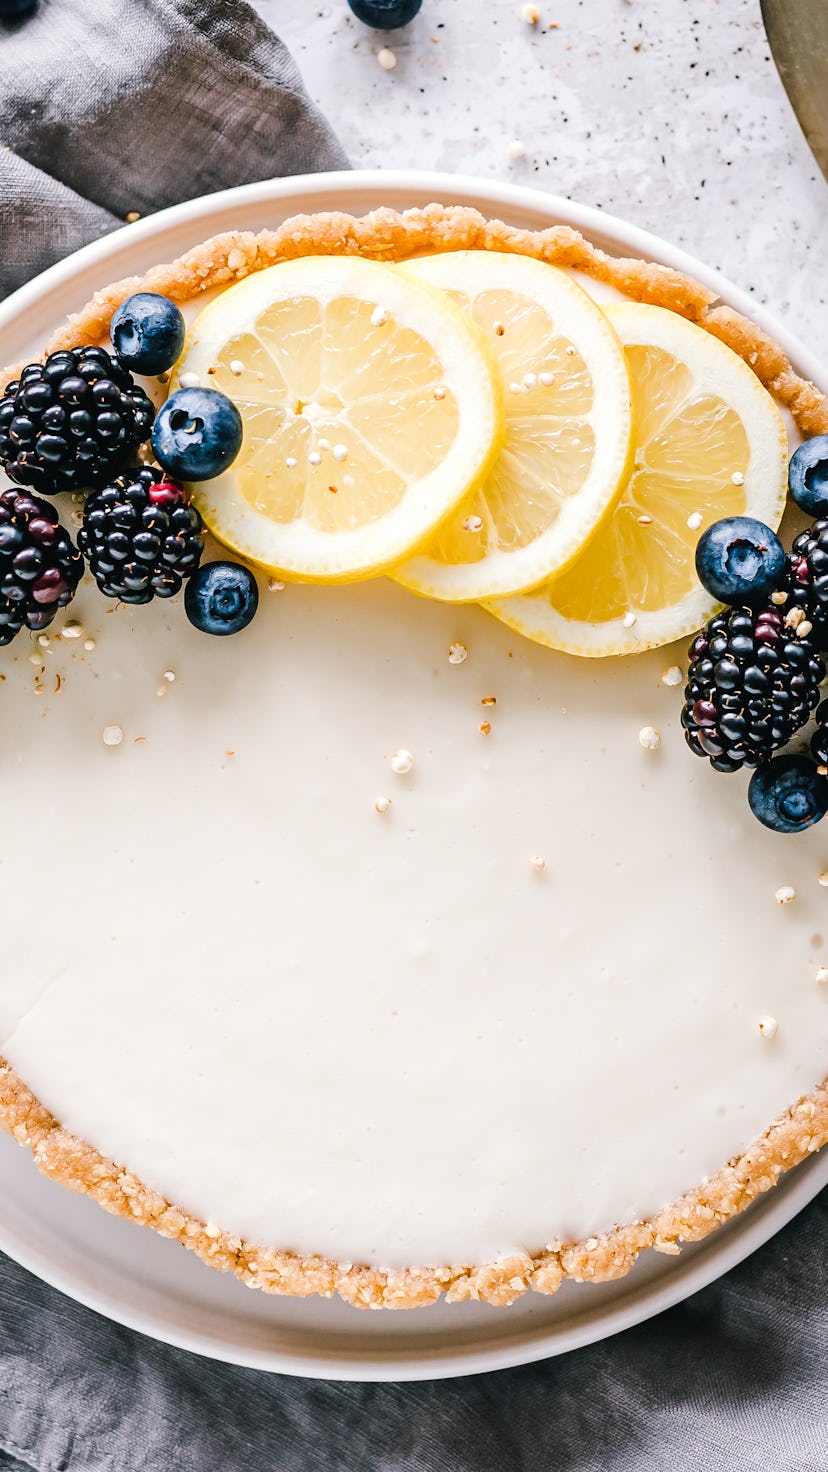 lemon tart with blueberries and fresh lemon garnish, shot from above